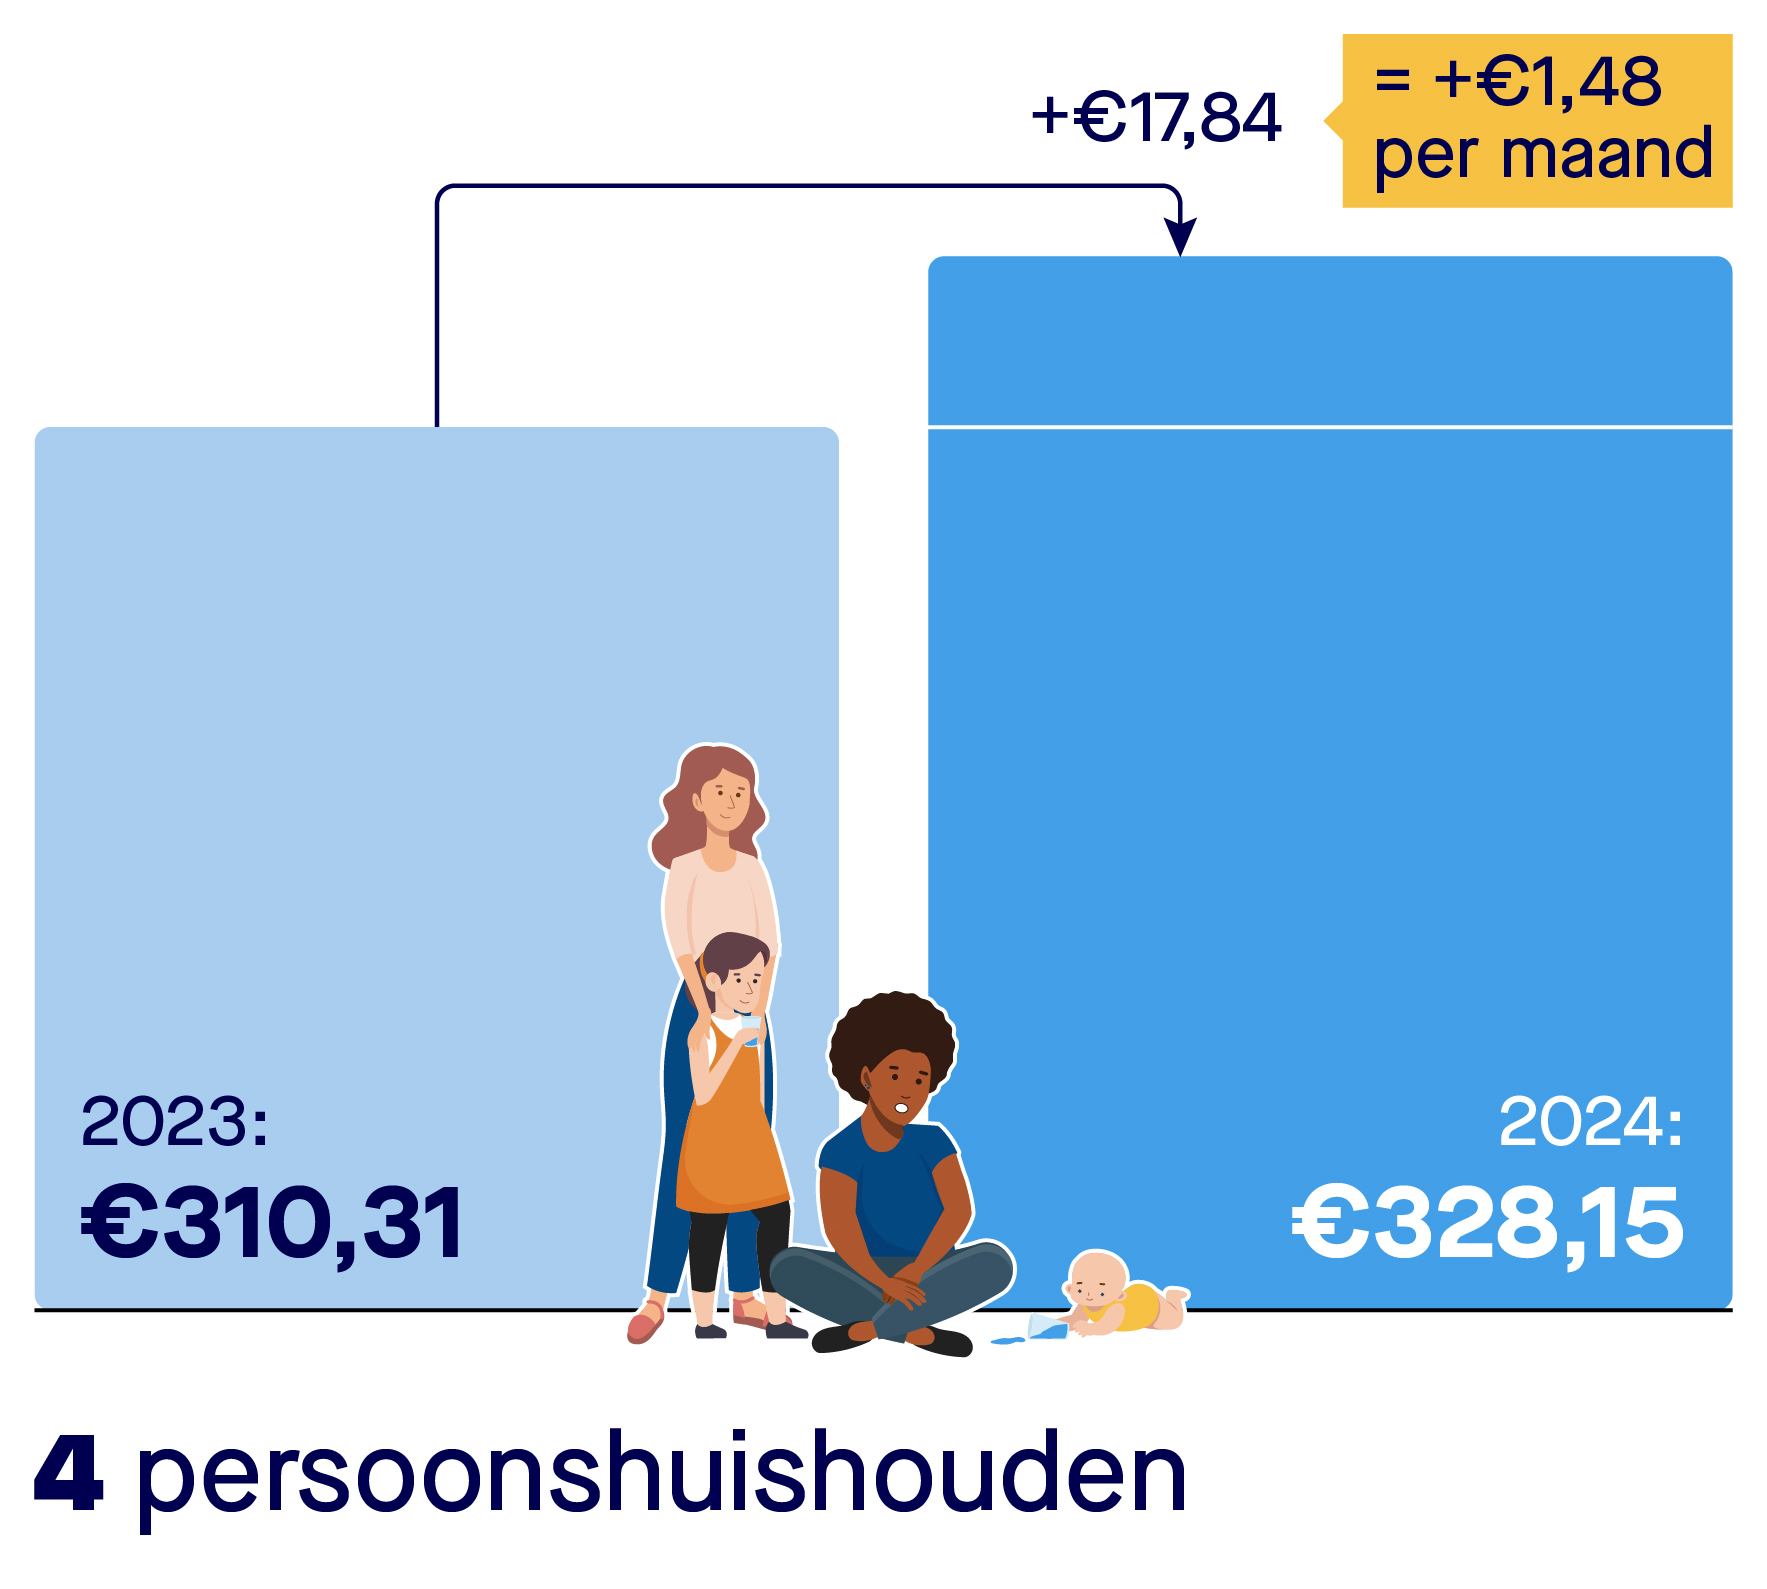 Rekenvoorbeeld stijging kosten drinkwater voor een vierpersoonshuishouden. Een vierpersoonshuishouden betaalde in 2023 310,31 euro voor drinkwater. In 2024 betaalt een vierpersoonshuishouden 328,15 euro per jaar. Dat is een stijging van 1,48 euro per maand. En van 17,84 euro per jaar.